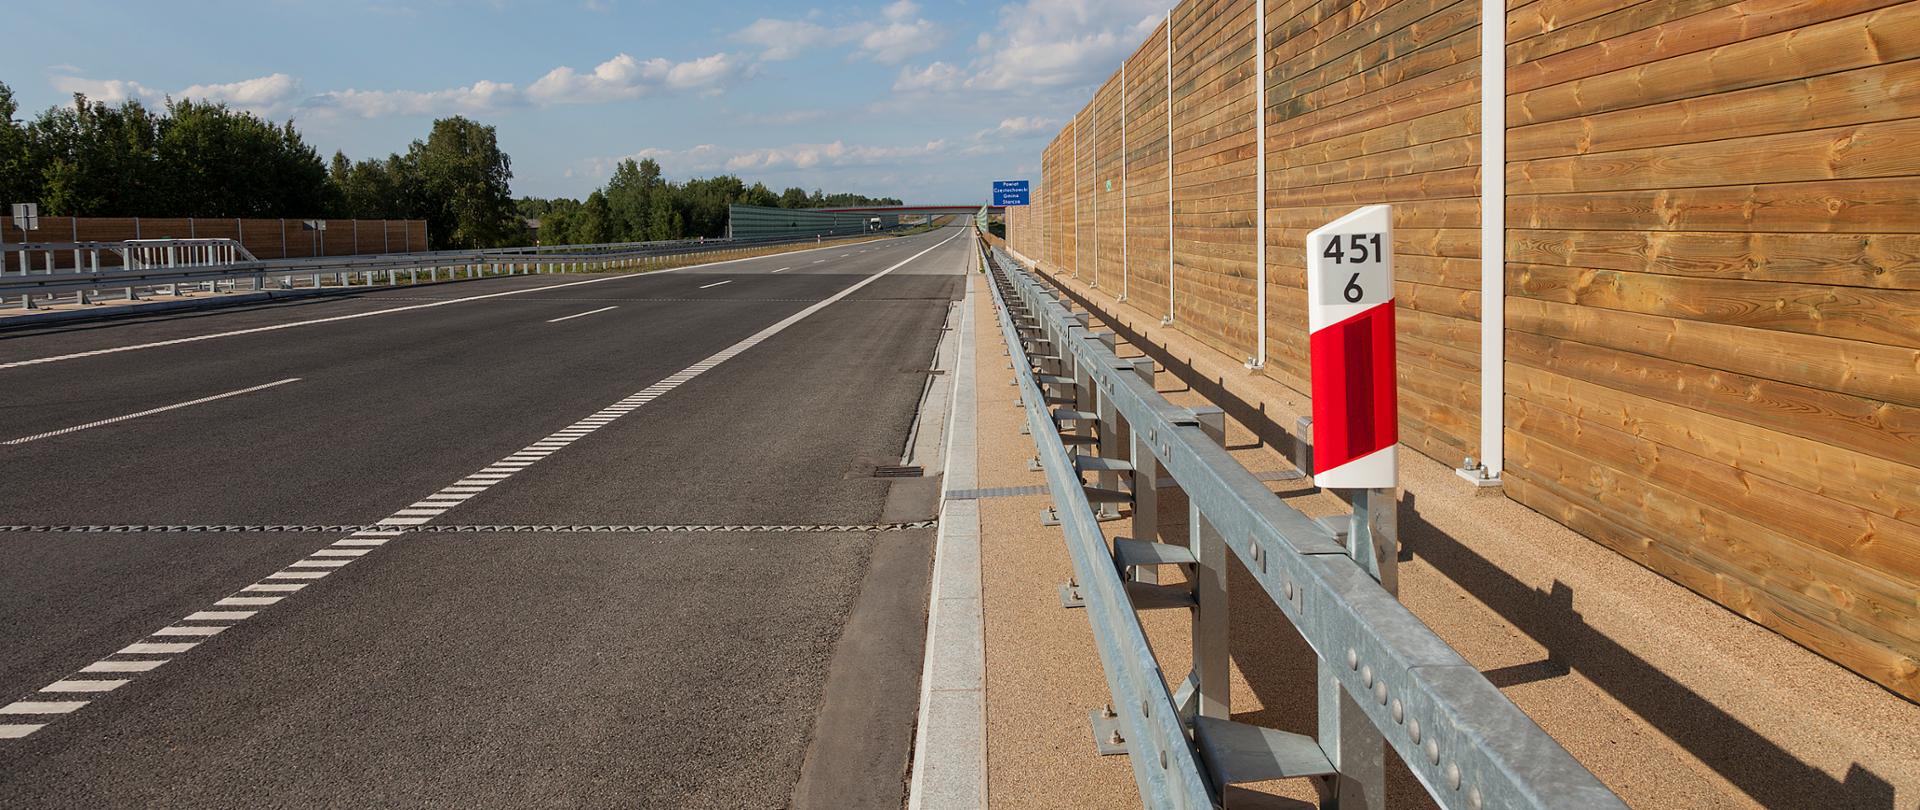 Powstaną dokumentacje projektowe dla budowy zabezpieczeń przeciwhałasowych wzdłuż S86 w Sosnowcu, DK86 w Sarnowie, DK44 w Mikołowie oraz DK94 w Sławkowie. Swoim zakresem obejmą odcinki dróg o łącznej długości ponad 7,5 km. 